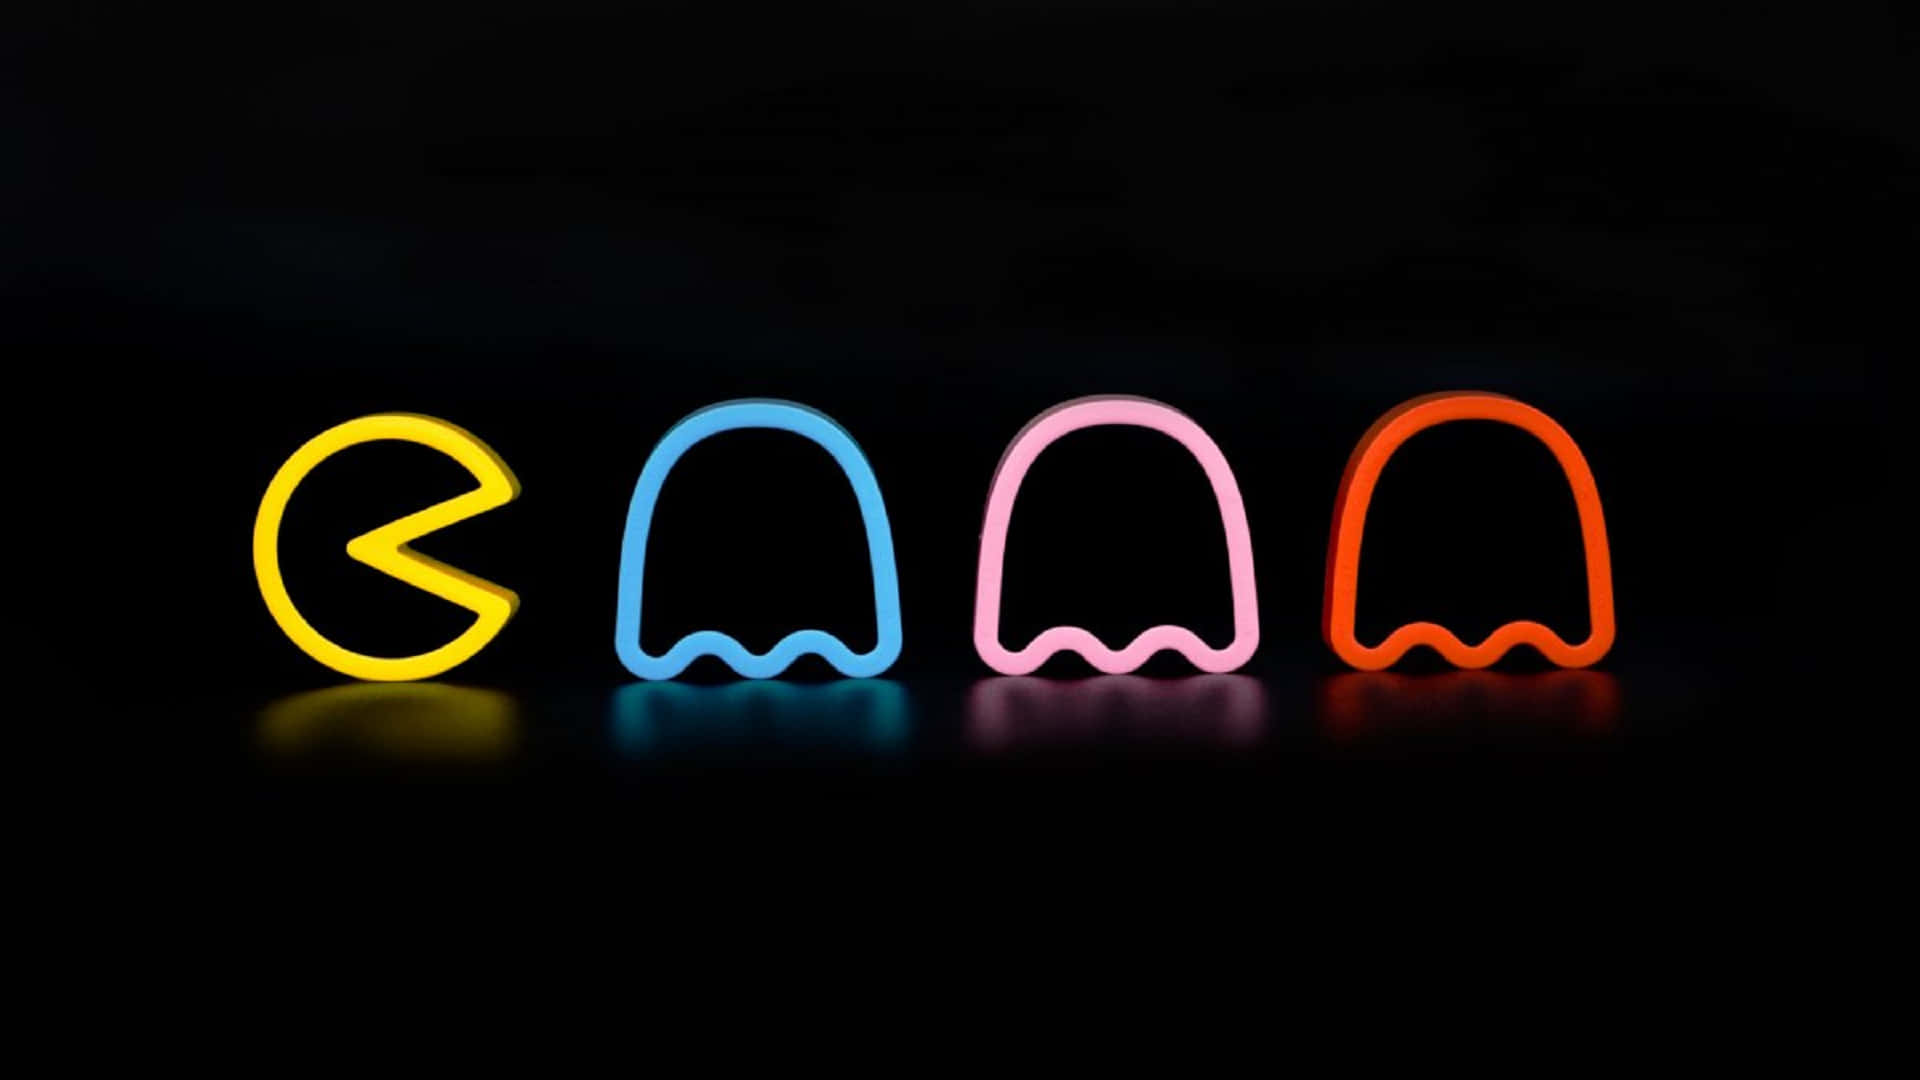 Fantasmasde Neón - Pacman - Letrero De Neón Fondo de pantalla